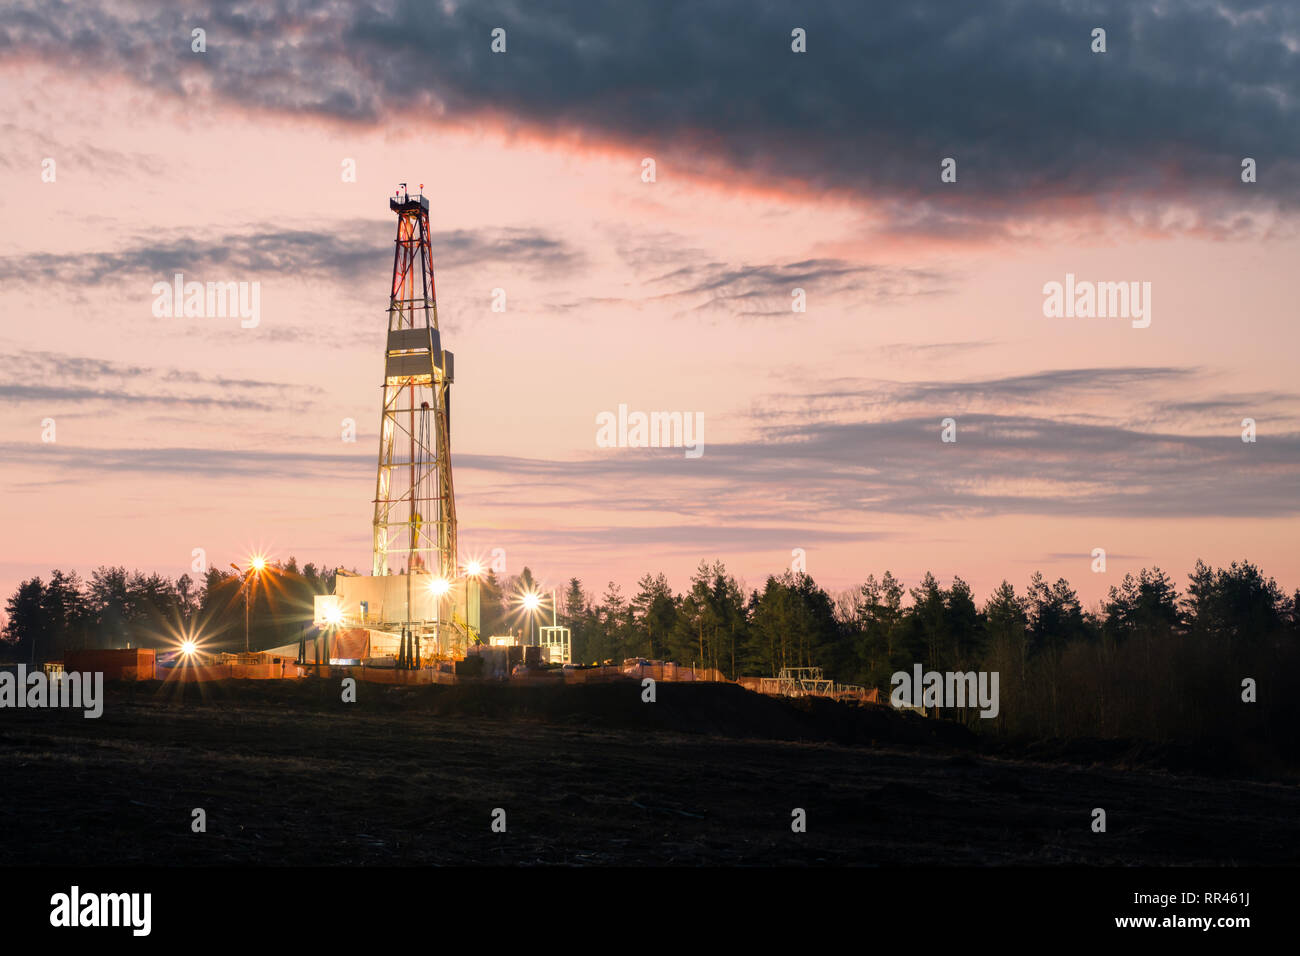 Oil gas drilling rig sur fond coucher de soleil. Concept industriel Banque D'Images